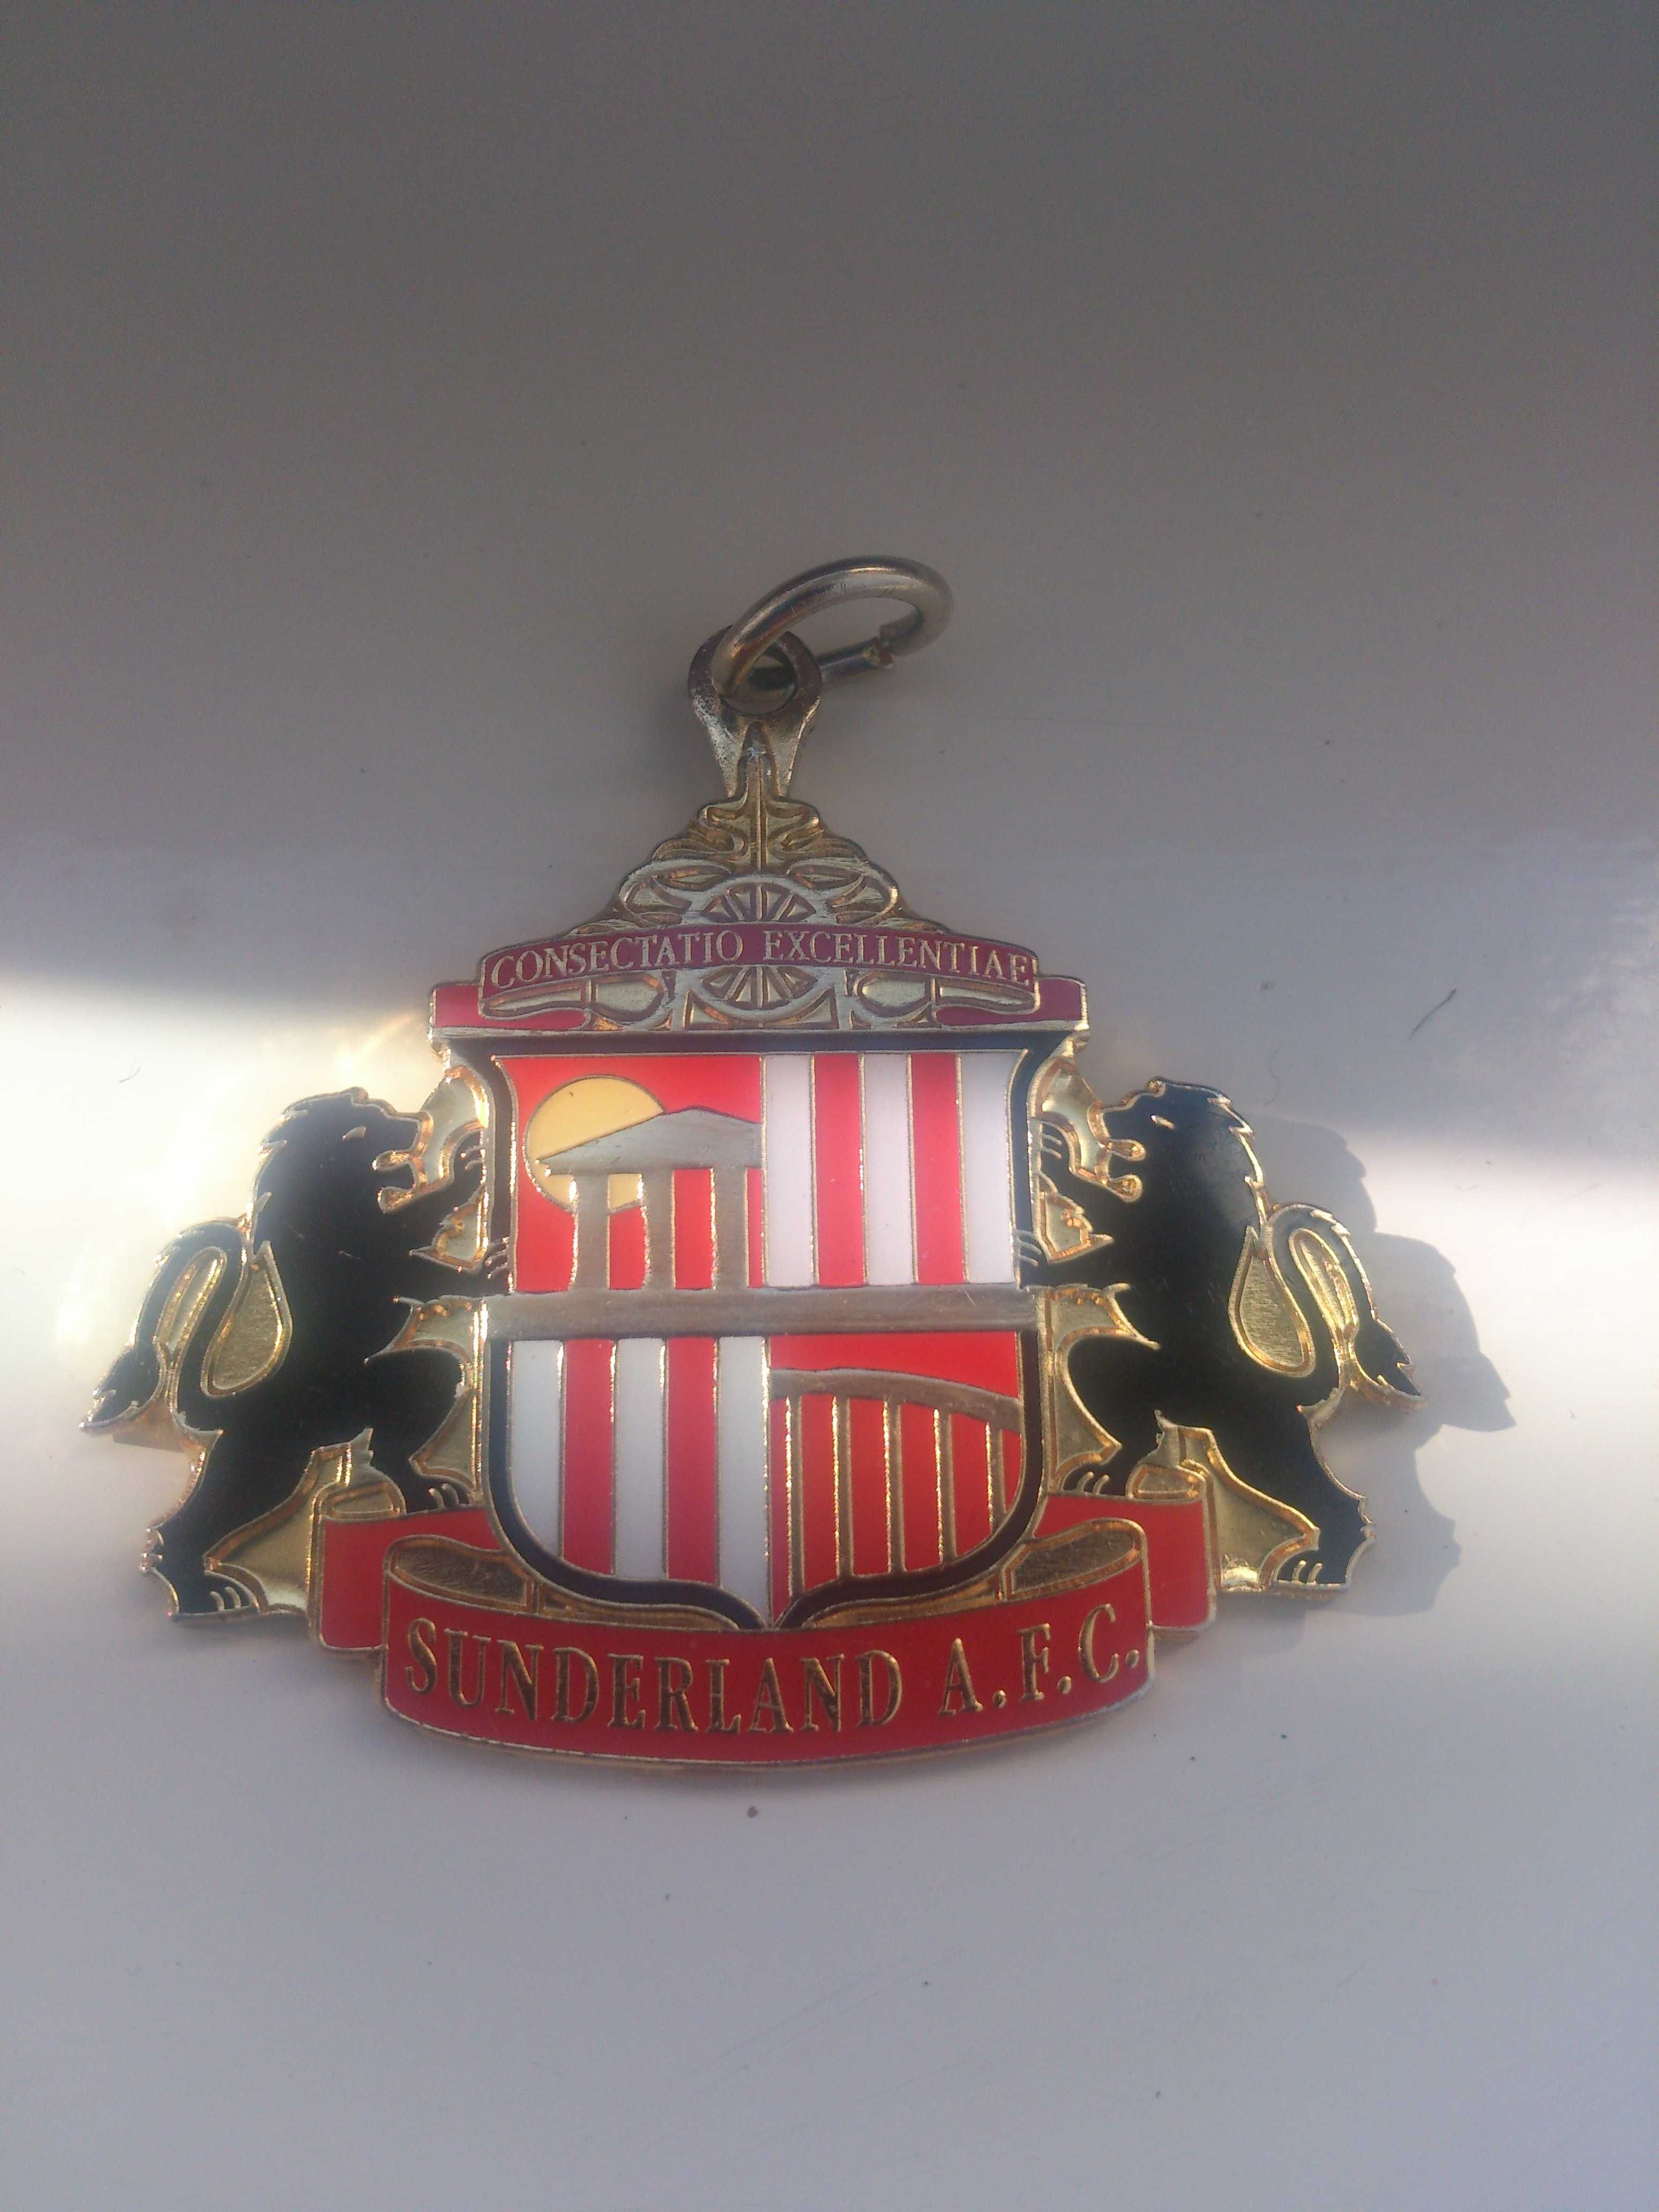 Sunderland A.F.C. Герб англійського футбольного клубу